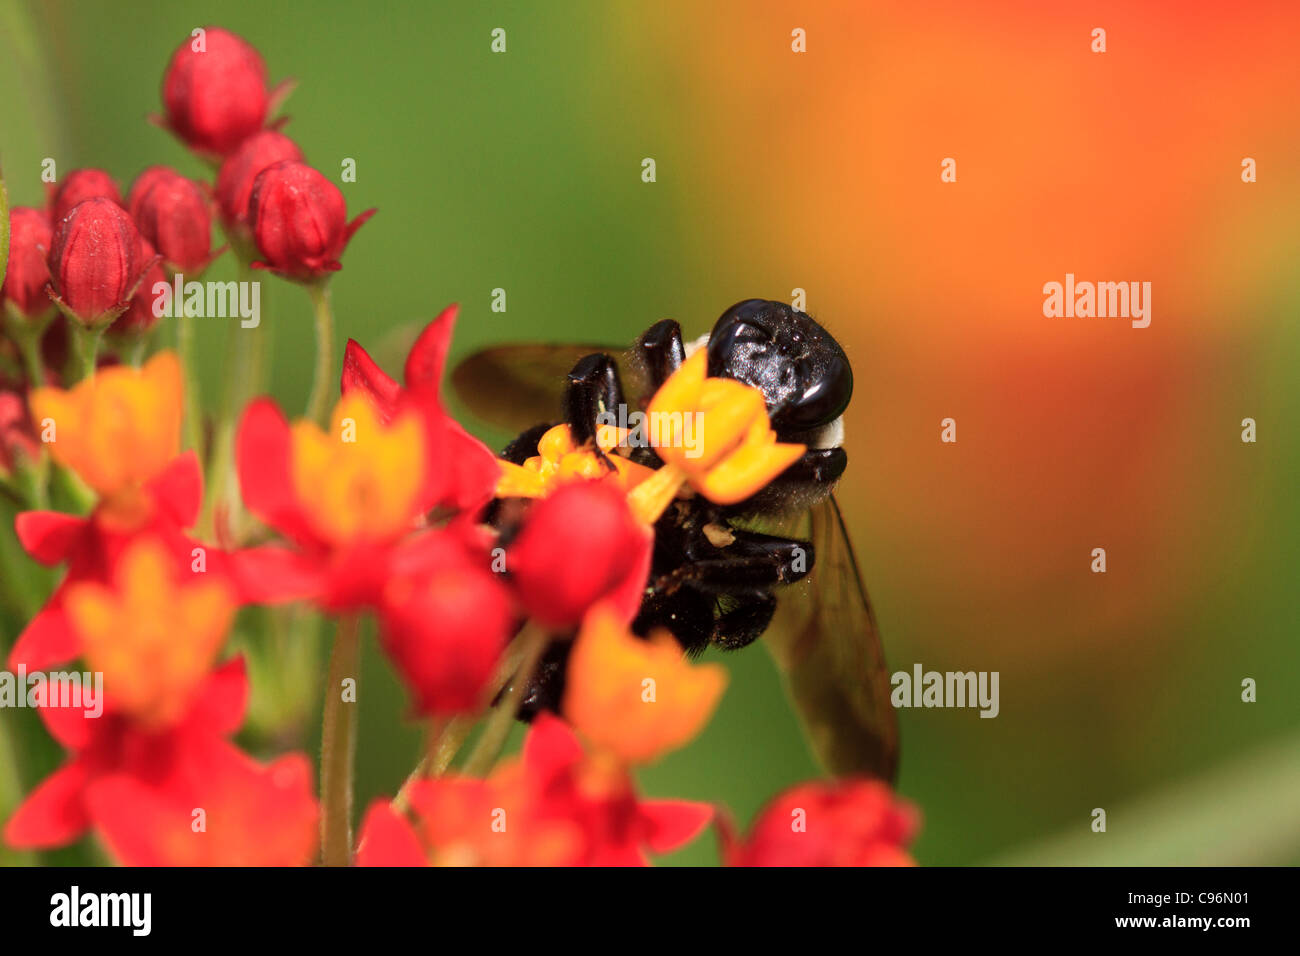 Bumblebee on flower (Bombus sp.) Stock Photo